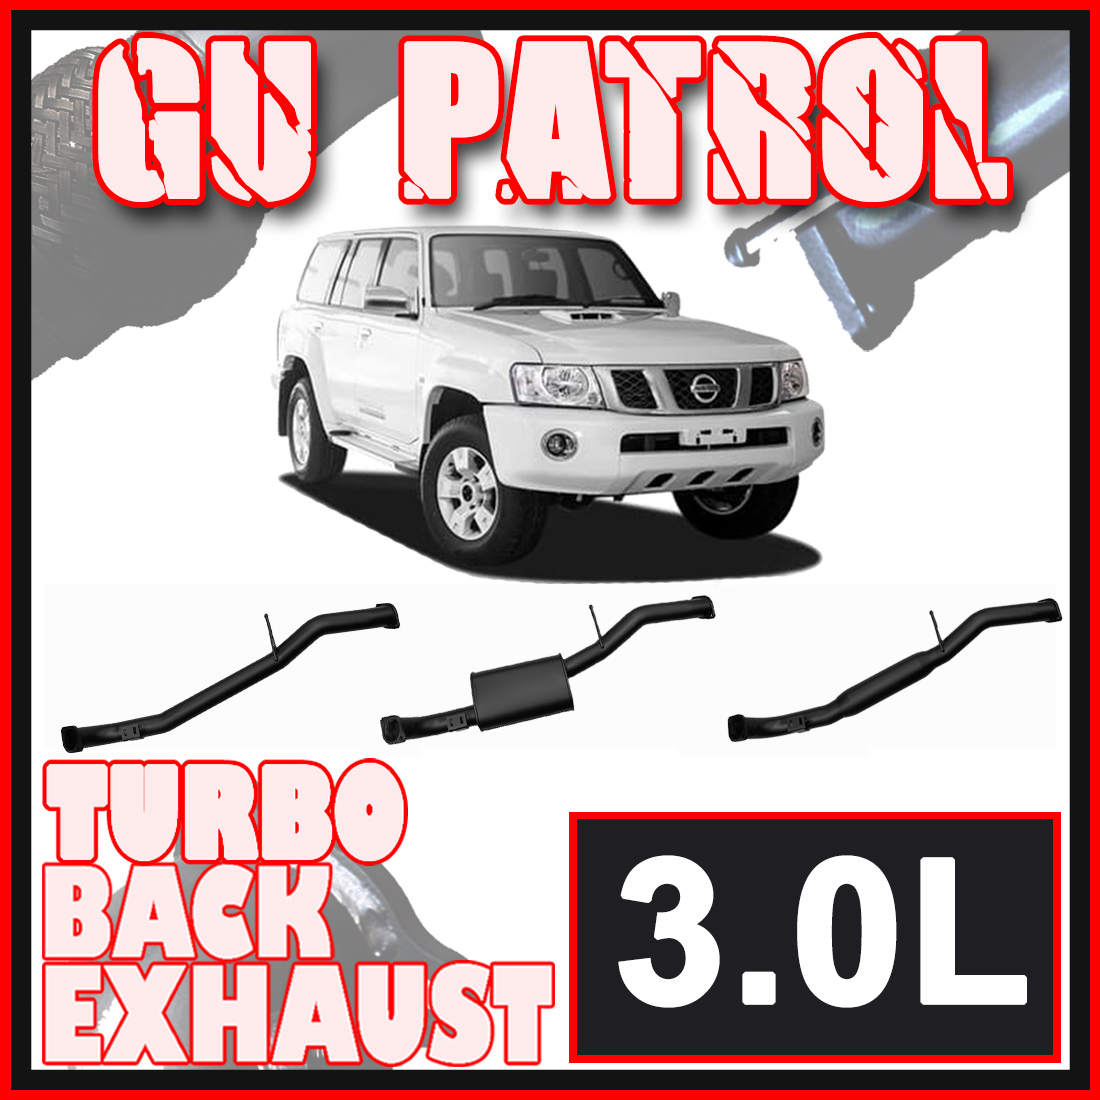 Nissan GU Patrol Exhaust Wagon 3L 3" Inch Systems image